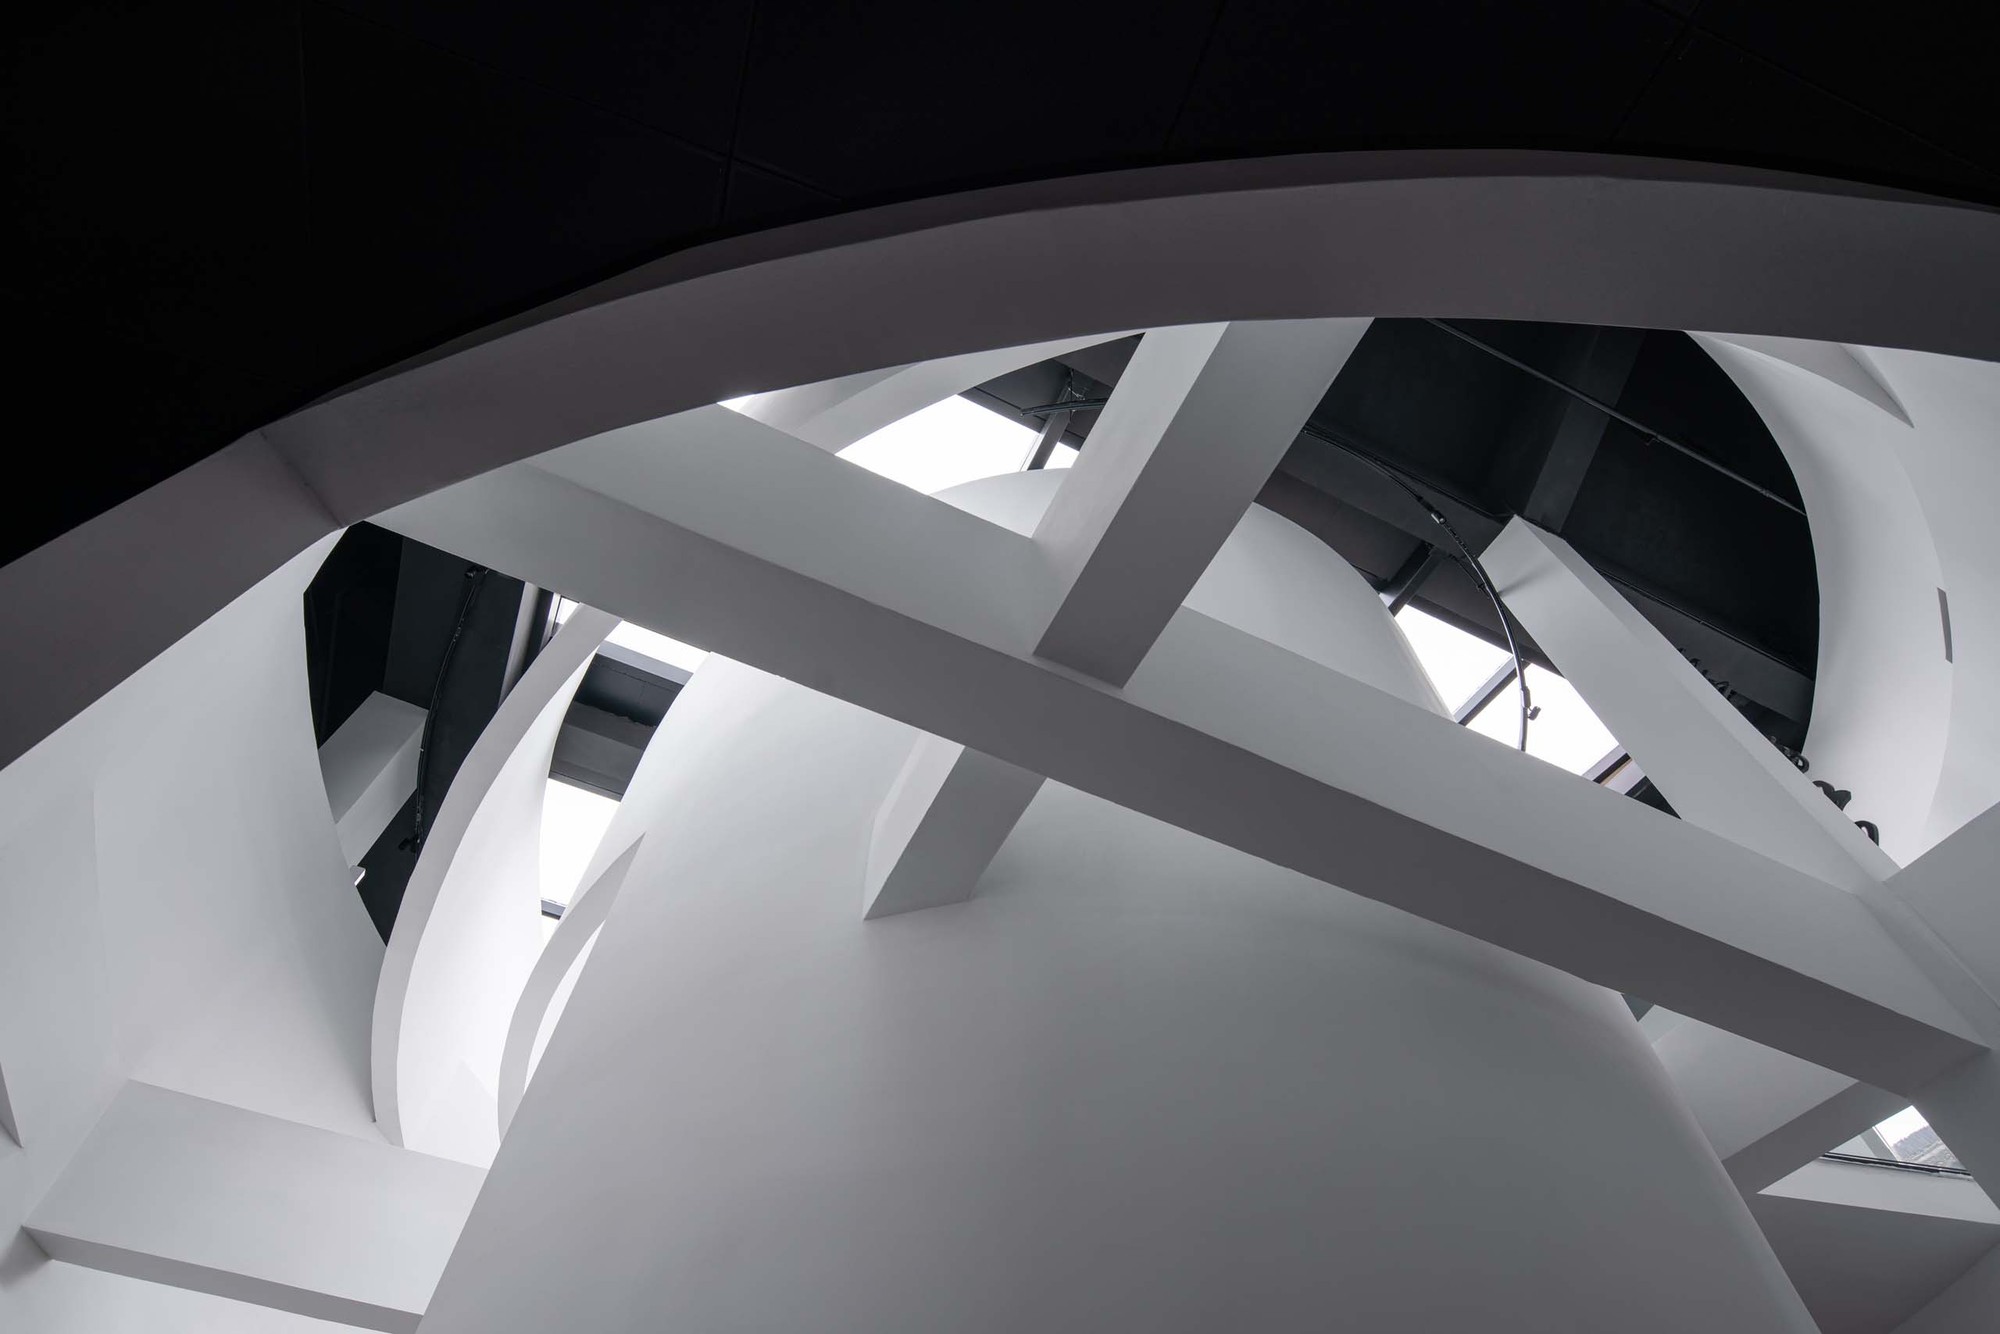 图片[7]|“借山重影”，塘栖枇杷博物馆 / 田之间建筑&植田建筑|ART-Arrakis | 建筑室内设计的创新与灵感